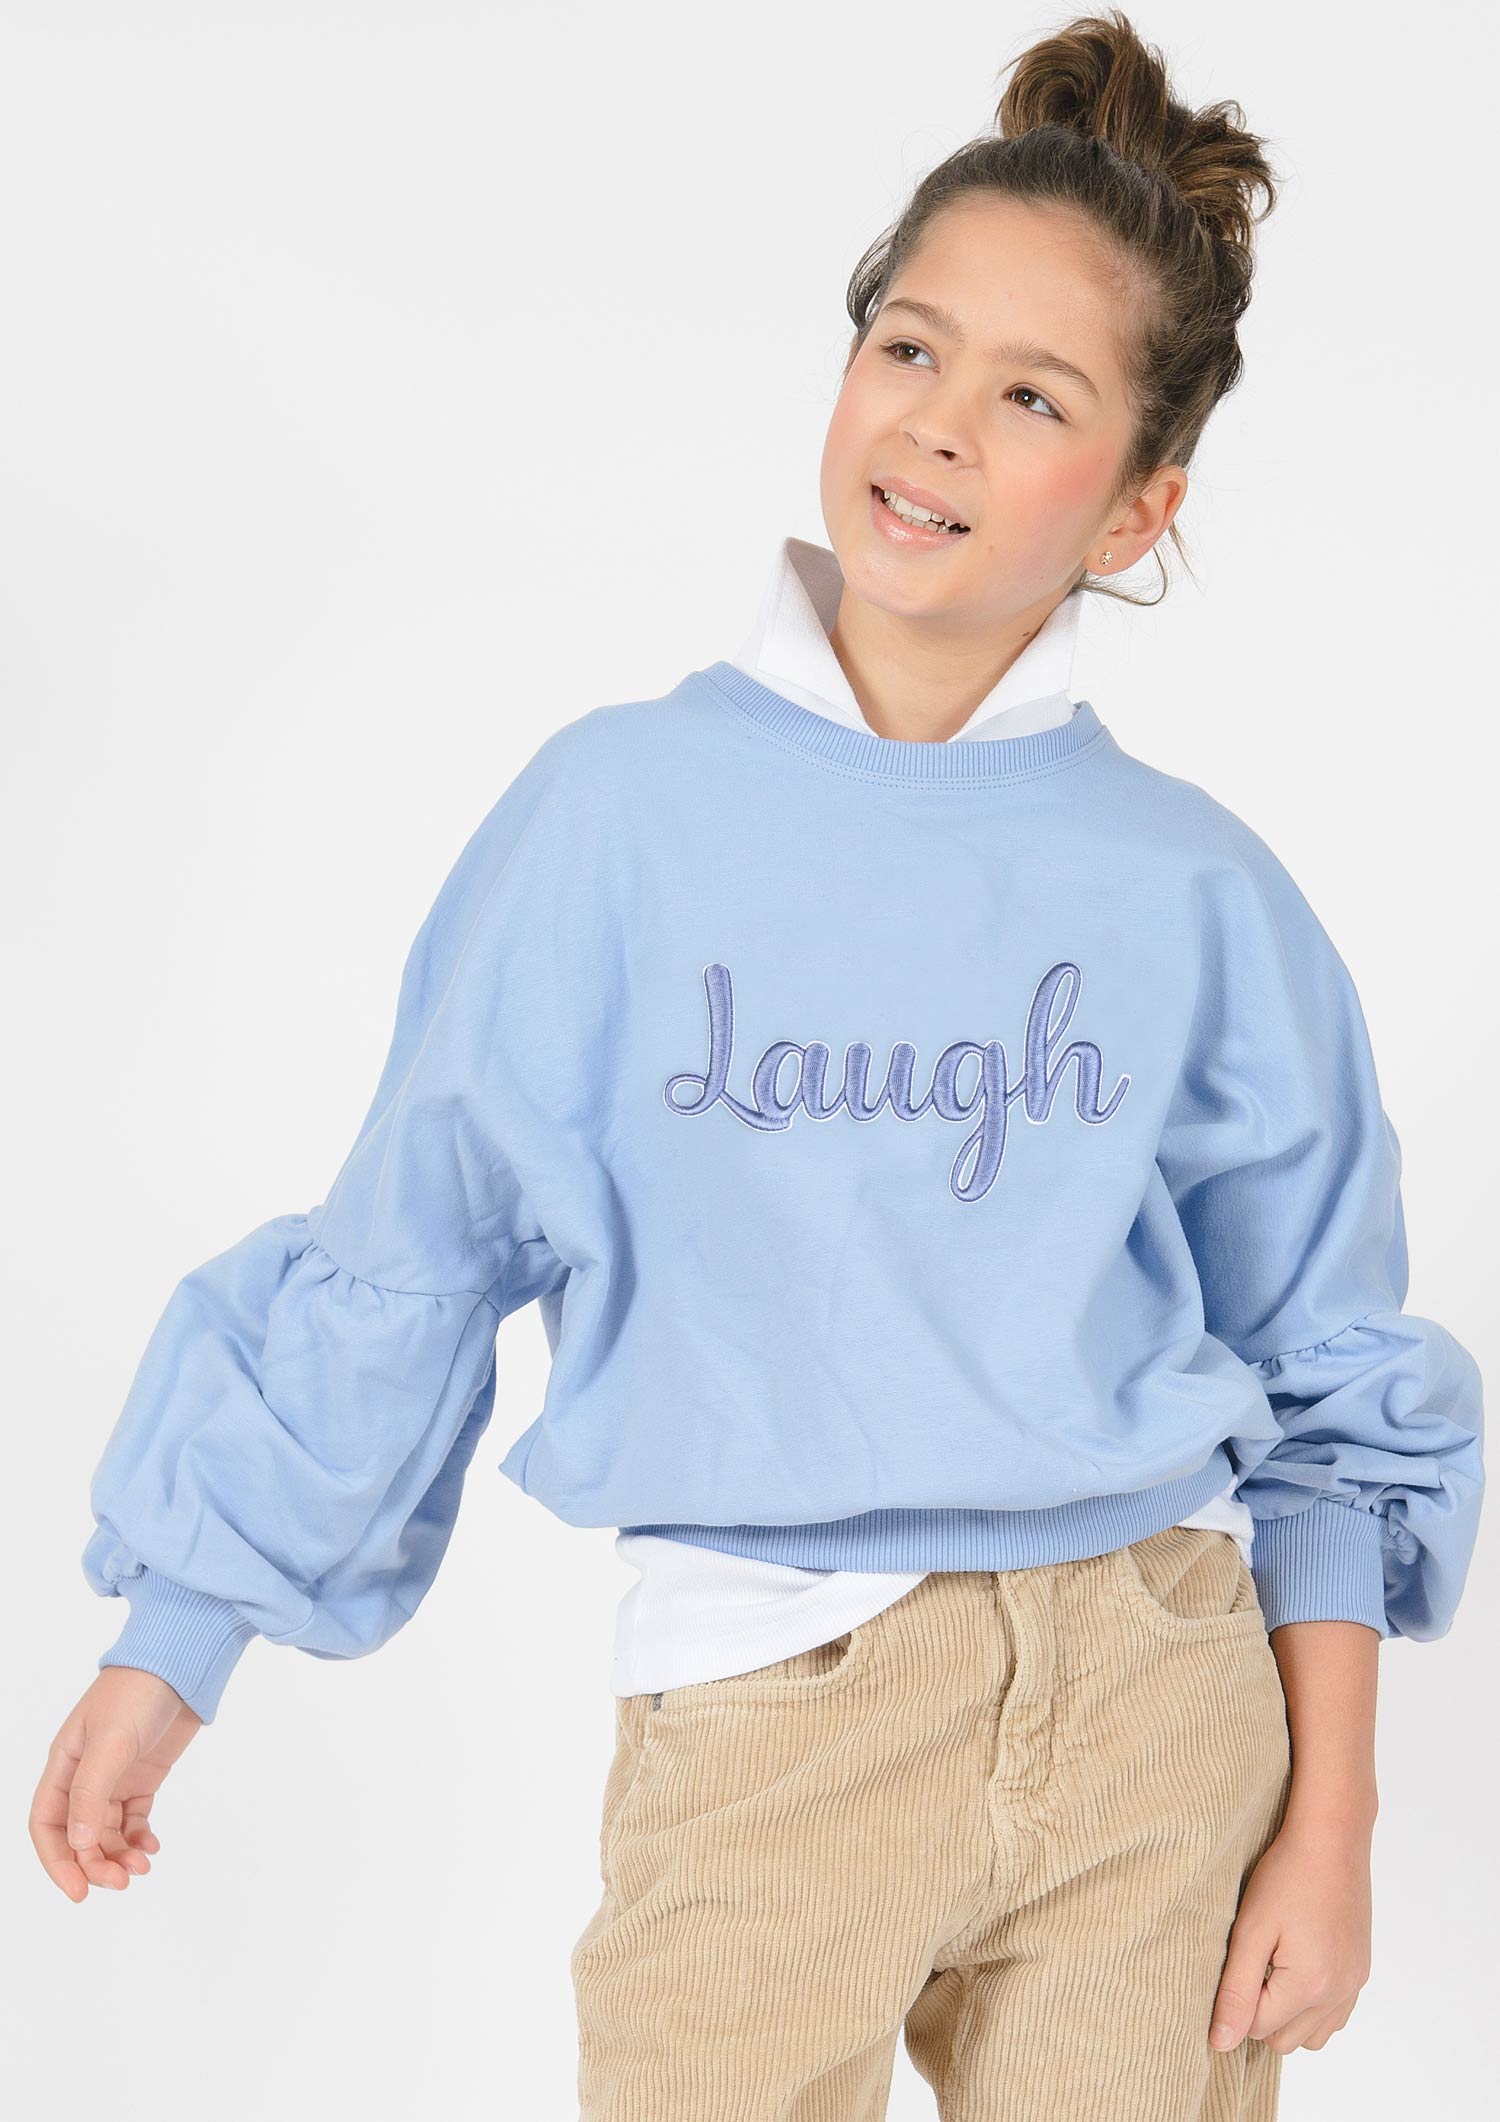 5789-Girls Sweatshirt -Laugh